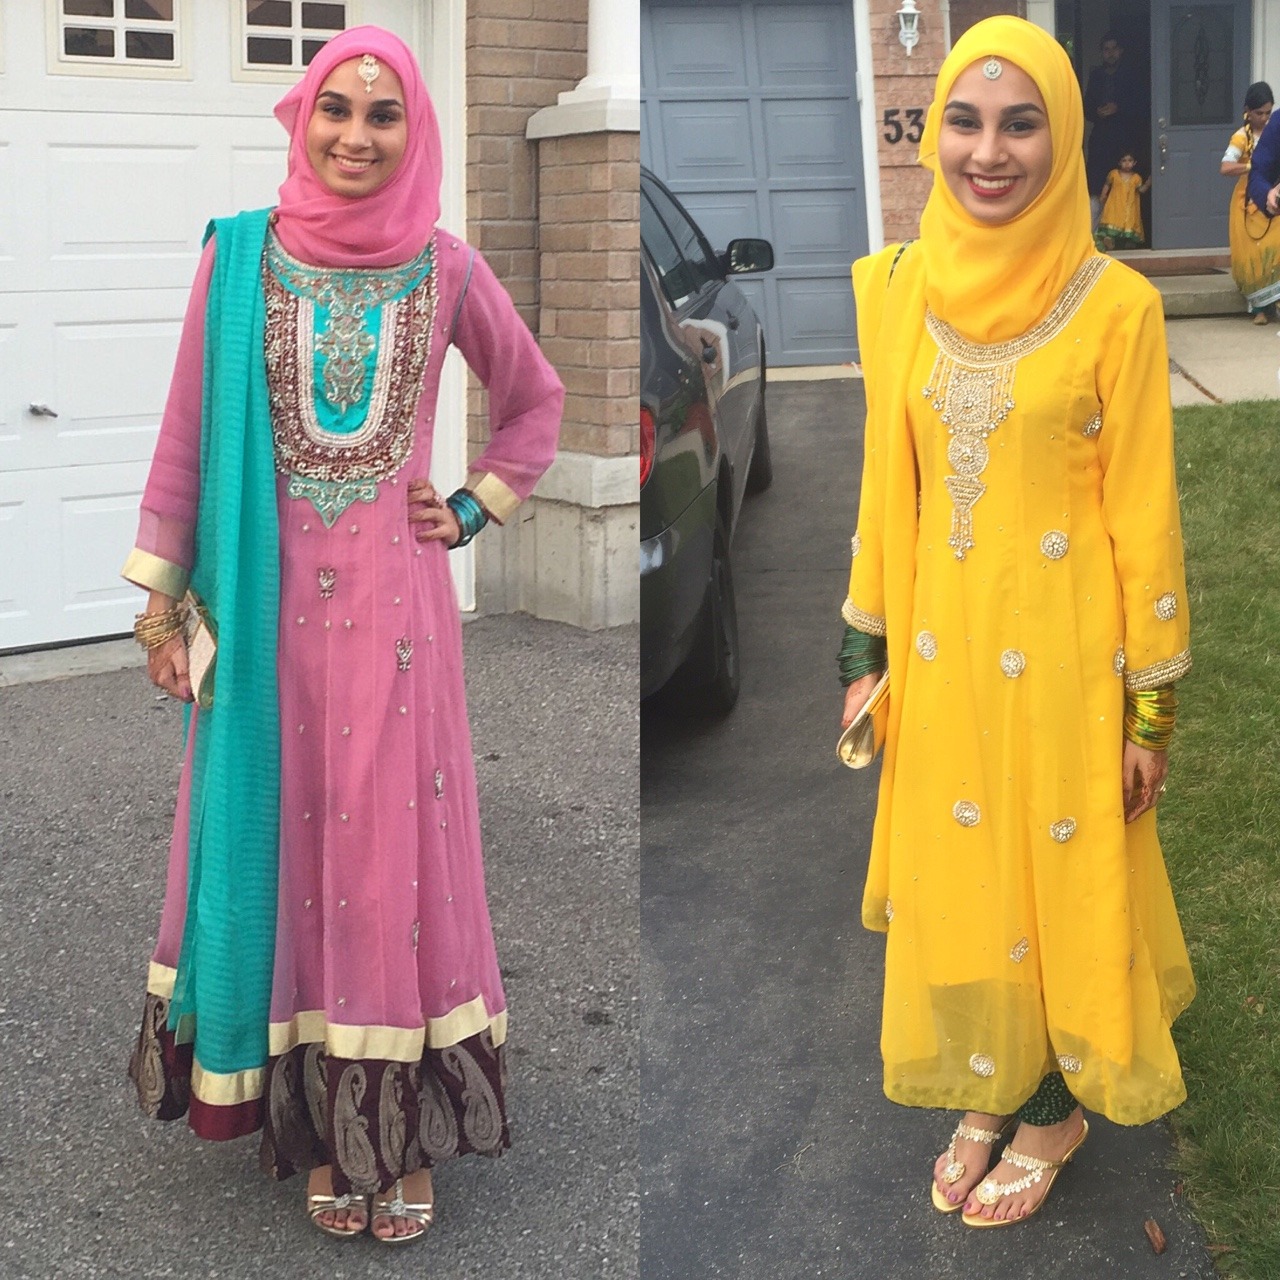 Fashion hijab muslim girls wedding